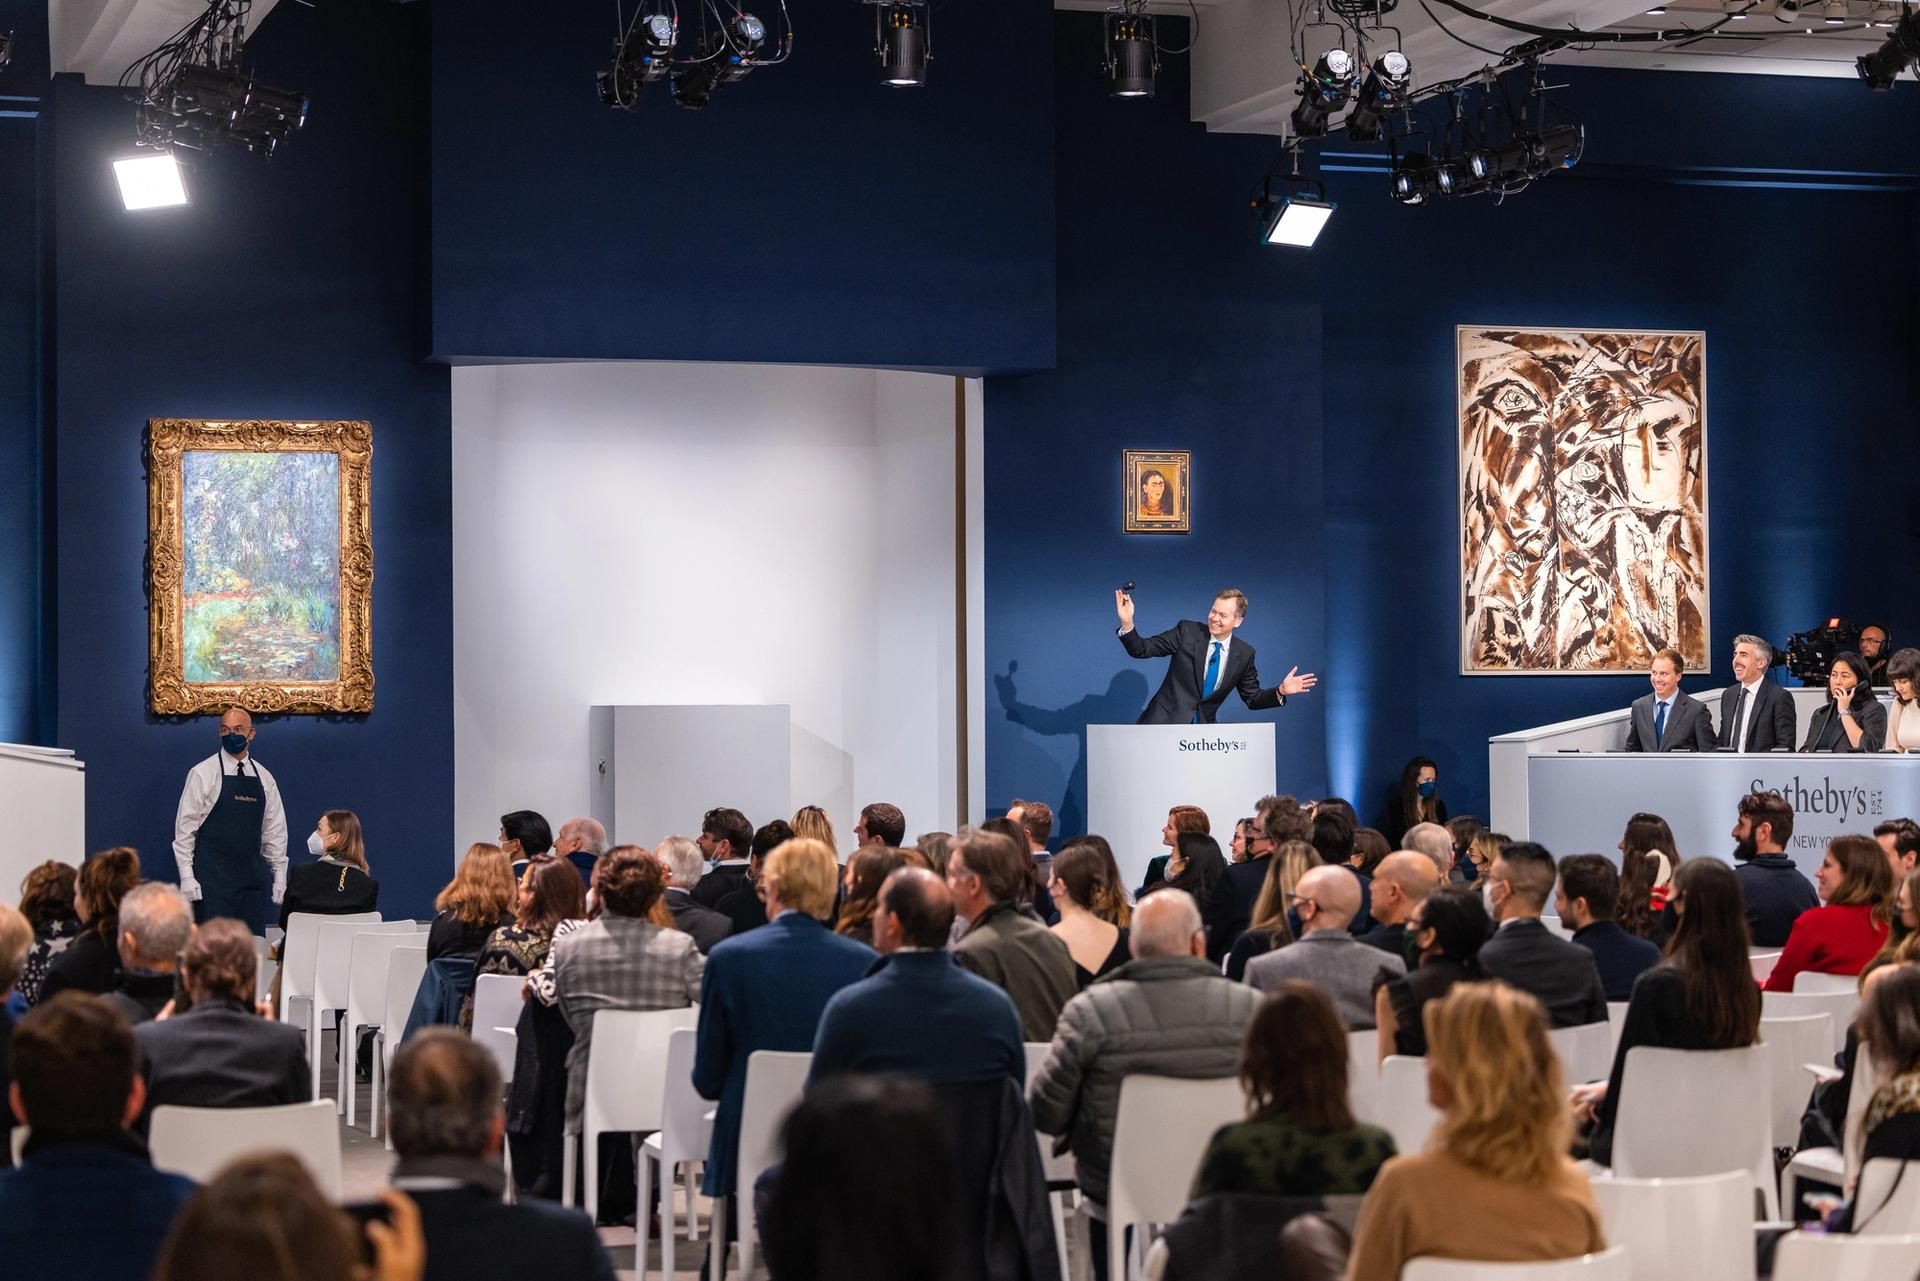 אוליבר בארקר על הדוכן במכירת ערב אמנות מודרנית אמש בסותבי'ס ניו יורק

באדיבות סותבי'ס


